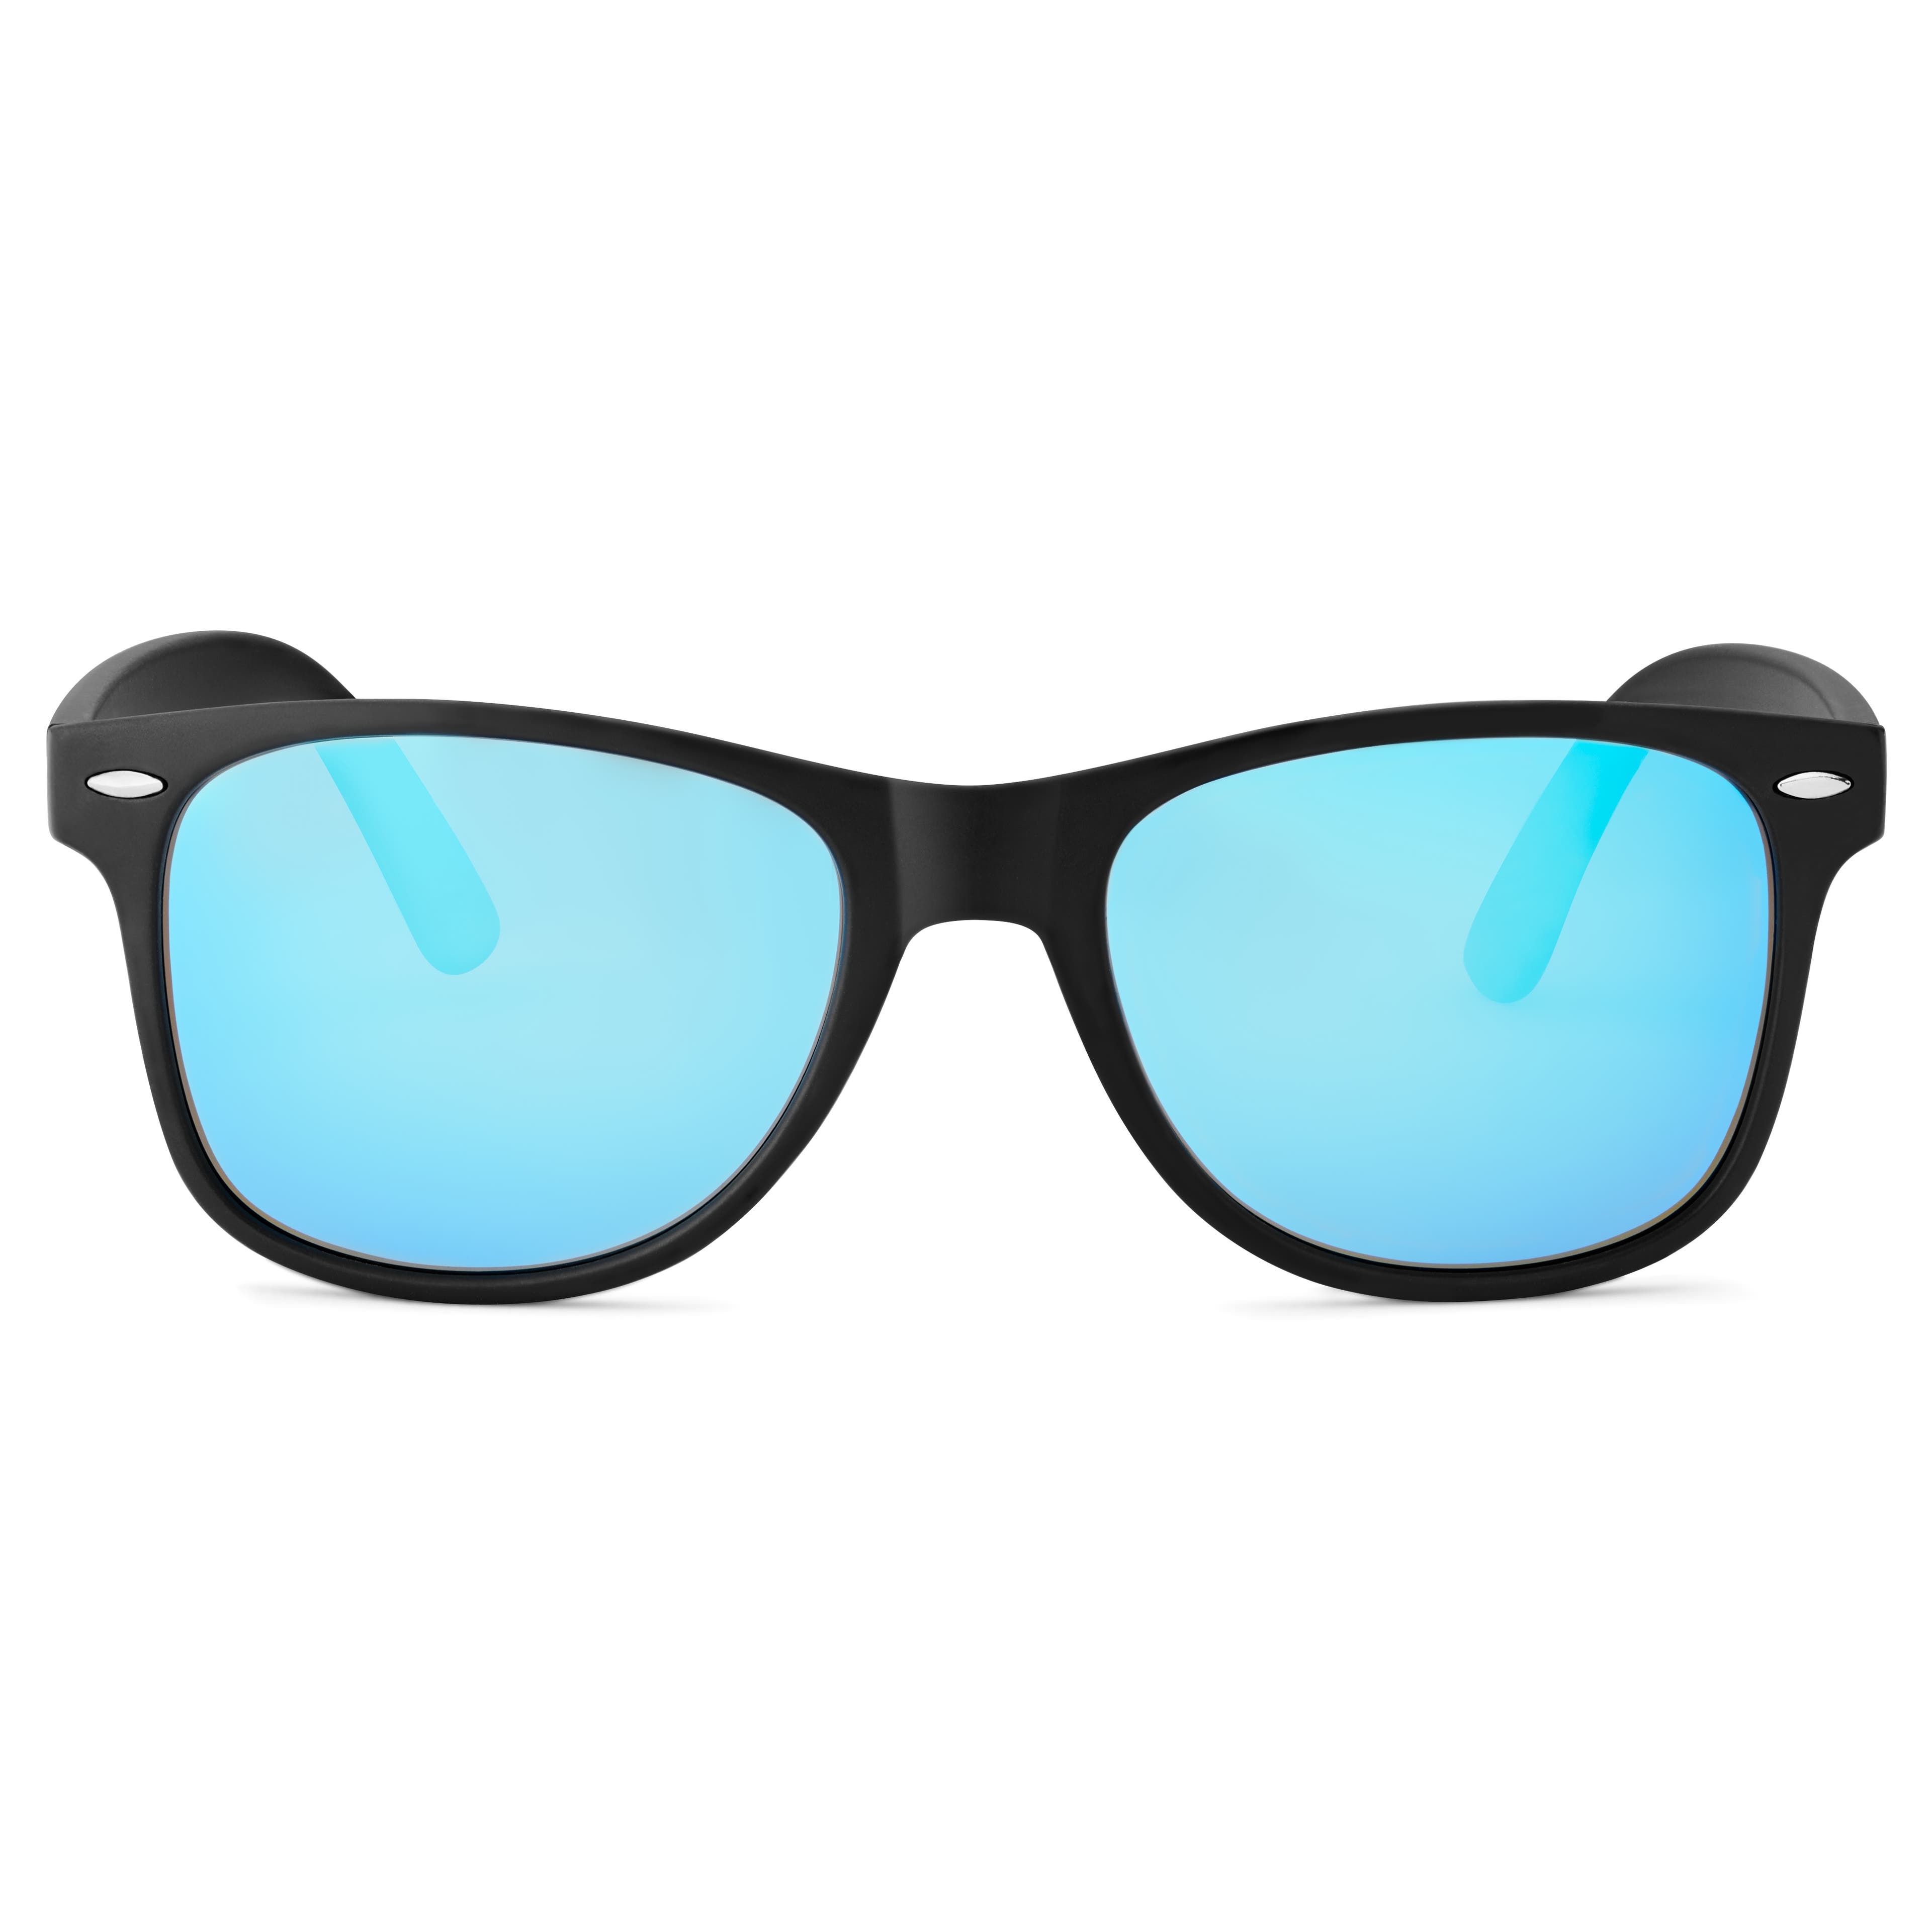 Sort og Blå Polariserte Retro Solbriller